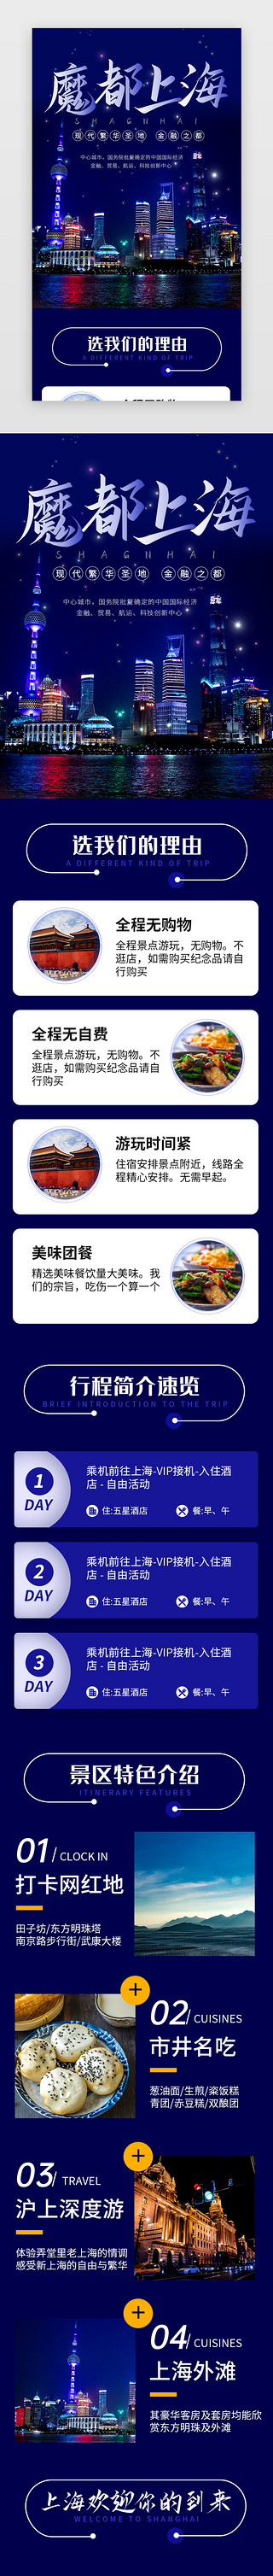 长假旅行UI设计素材_蓝色魔都上海旅行景点介绍H5长图海报